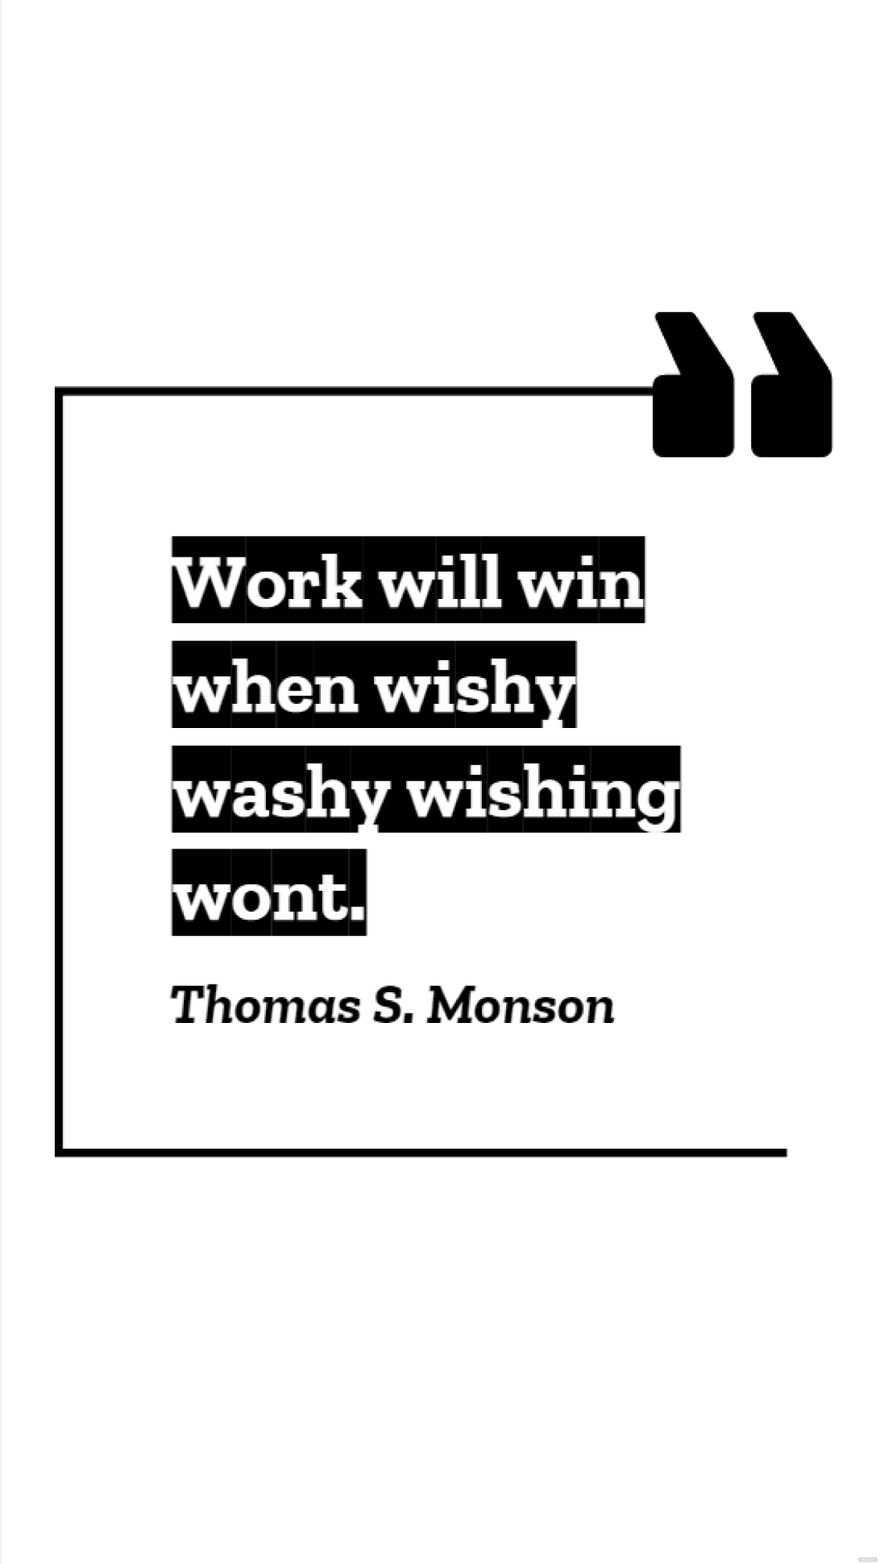 Thomas S. Monson - Work will win when wishy washy wishing wont. in JPG